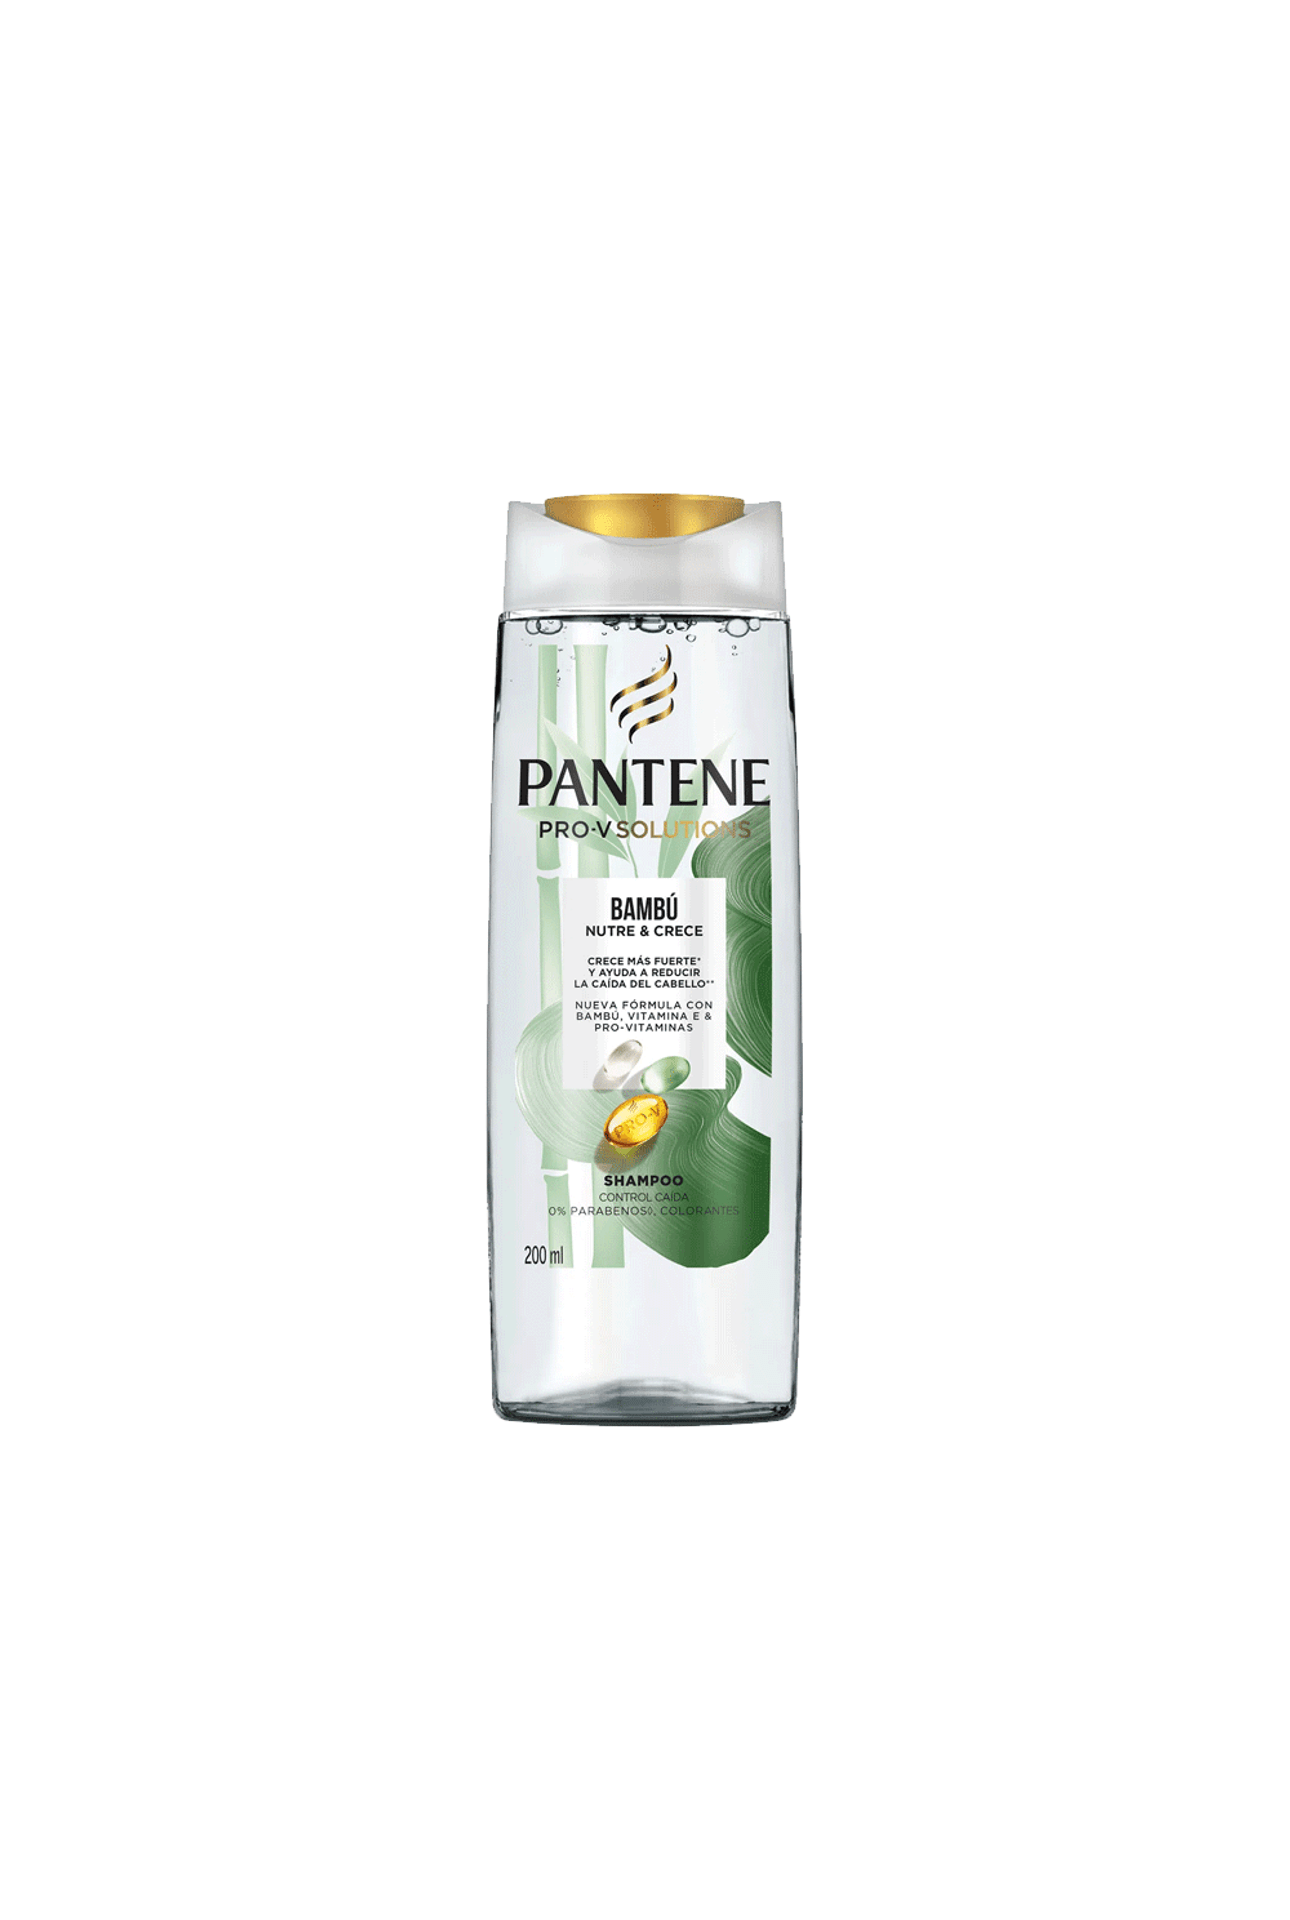 Pantene-Shampoo-Pantene-Bambu-x-200-ml-7500435212441_img1